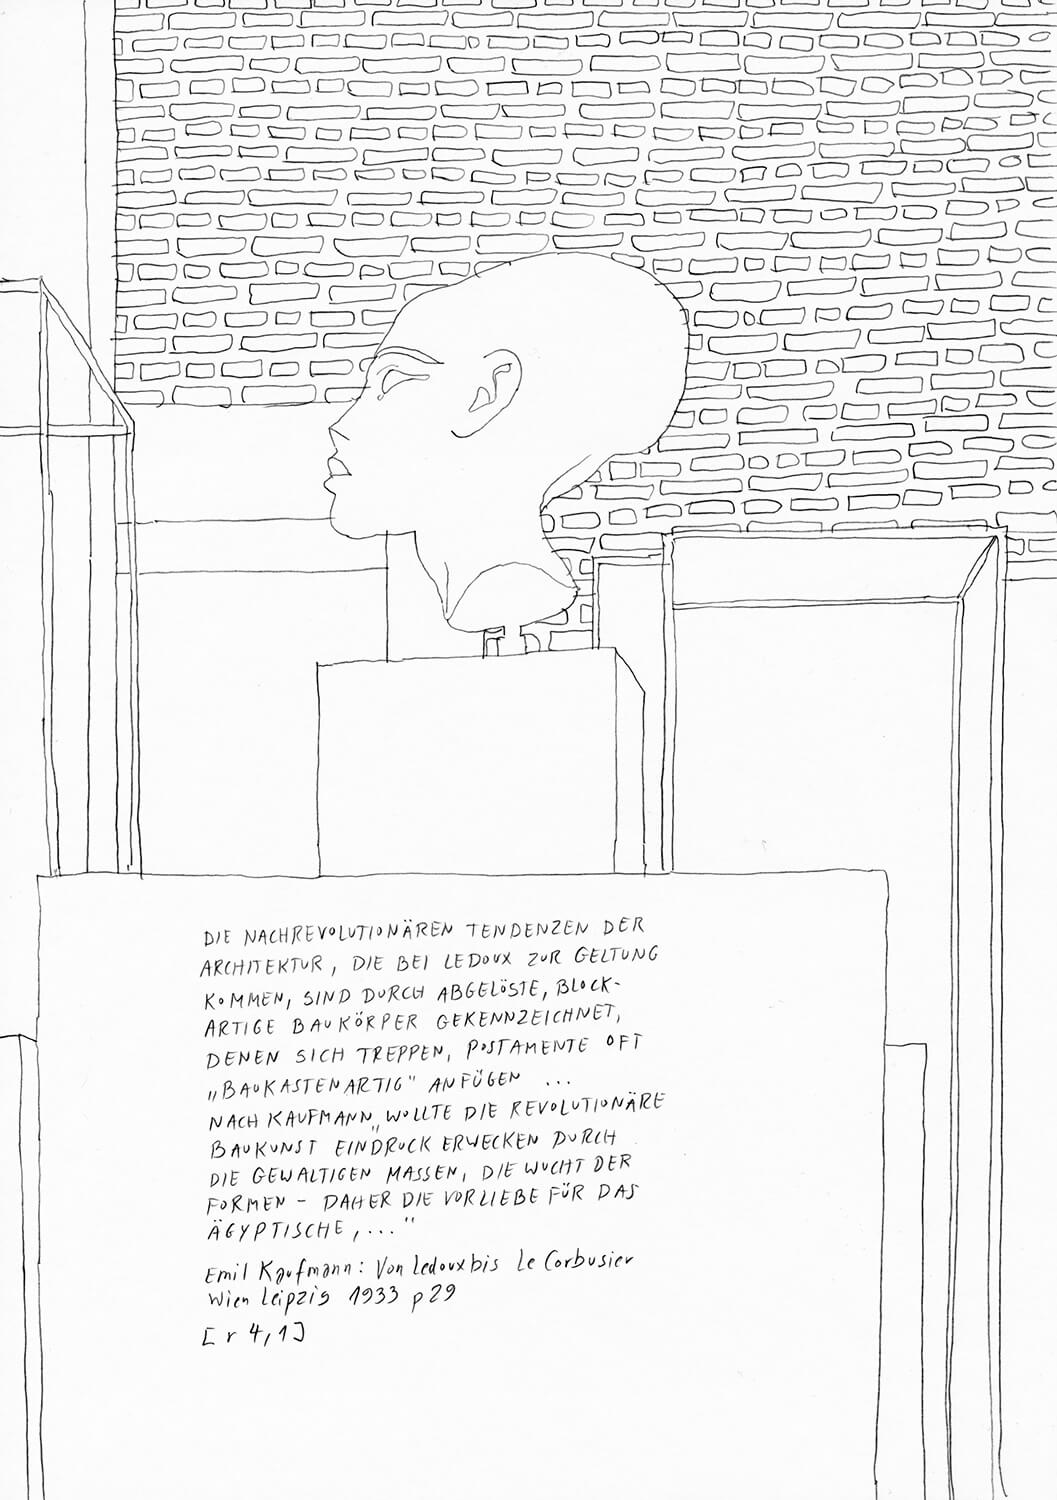 Matthias Beckmann, Passagen-Werk (60), 2019/2020, pencil on paper, 29.7 x 21 cm